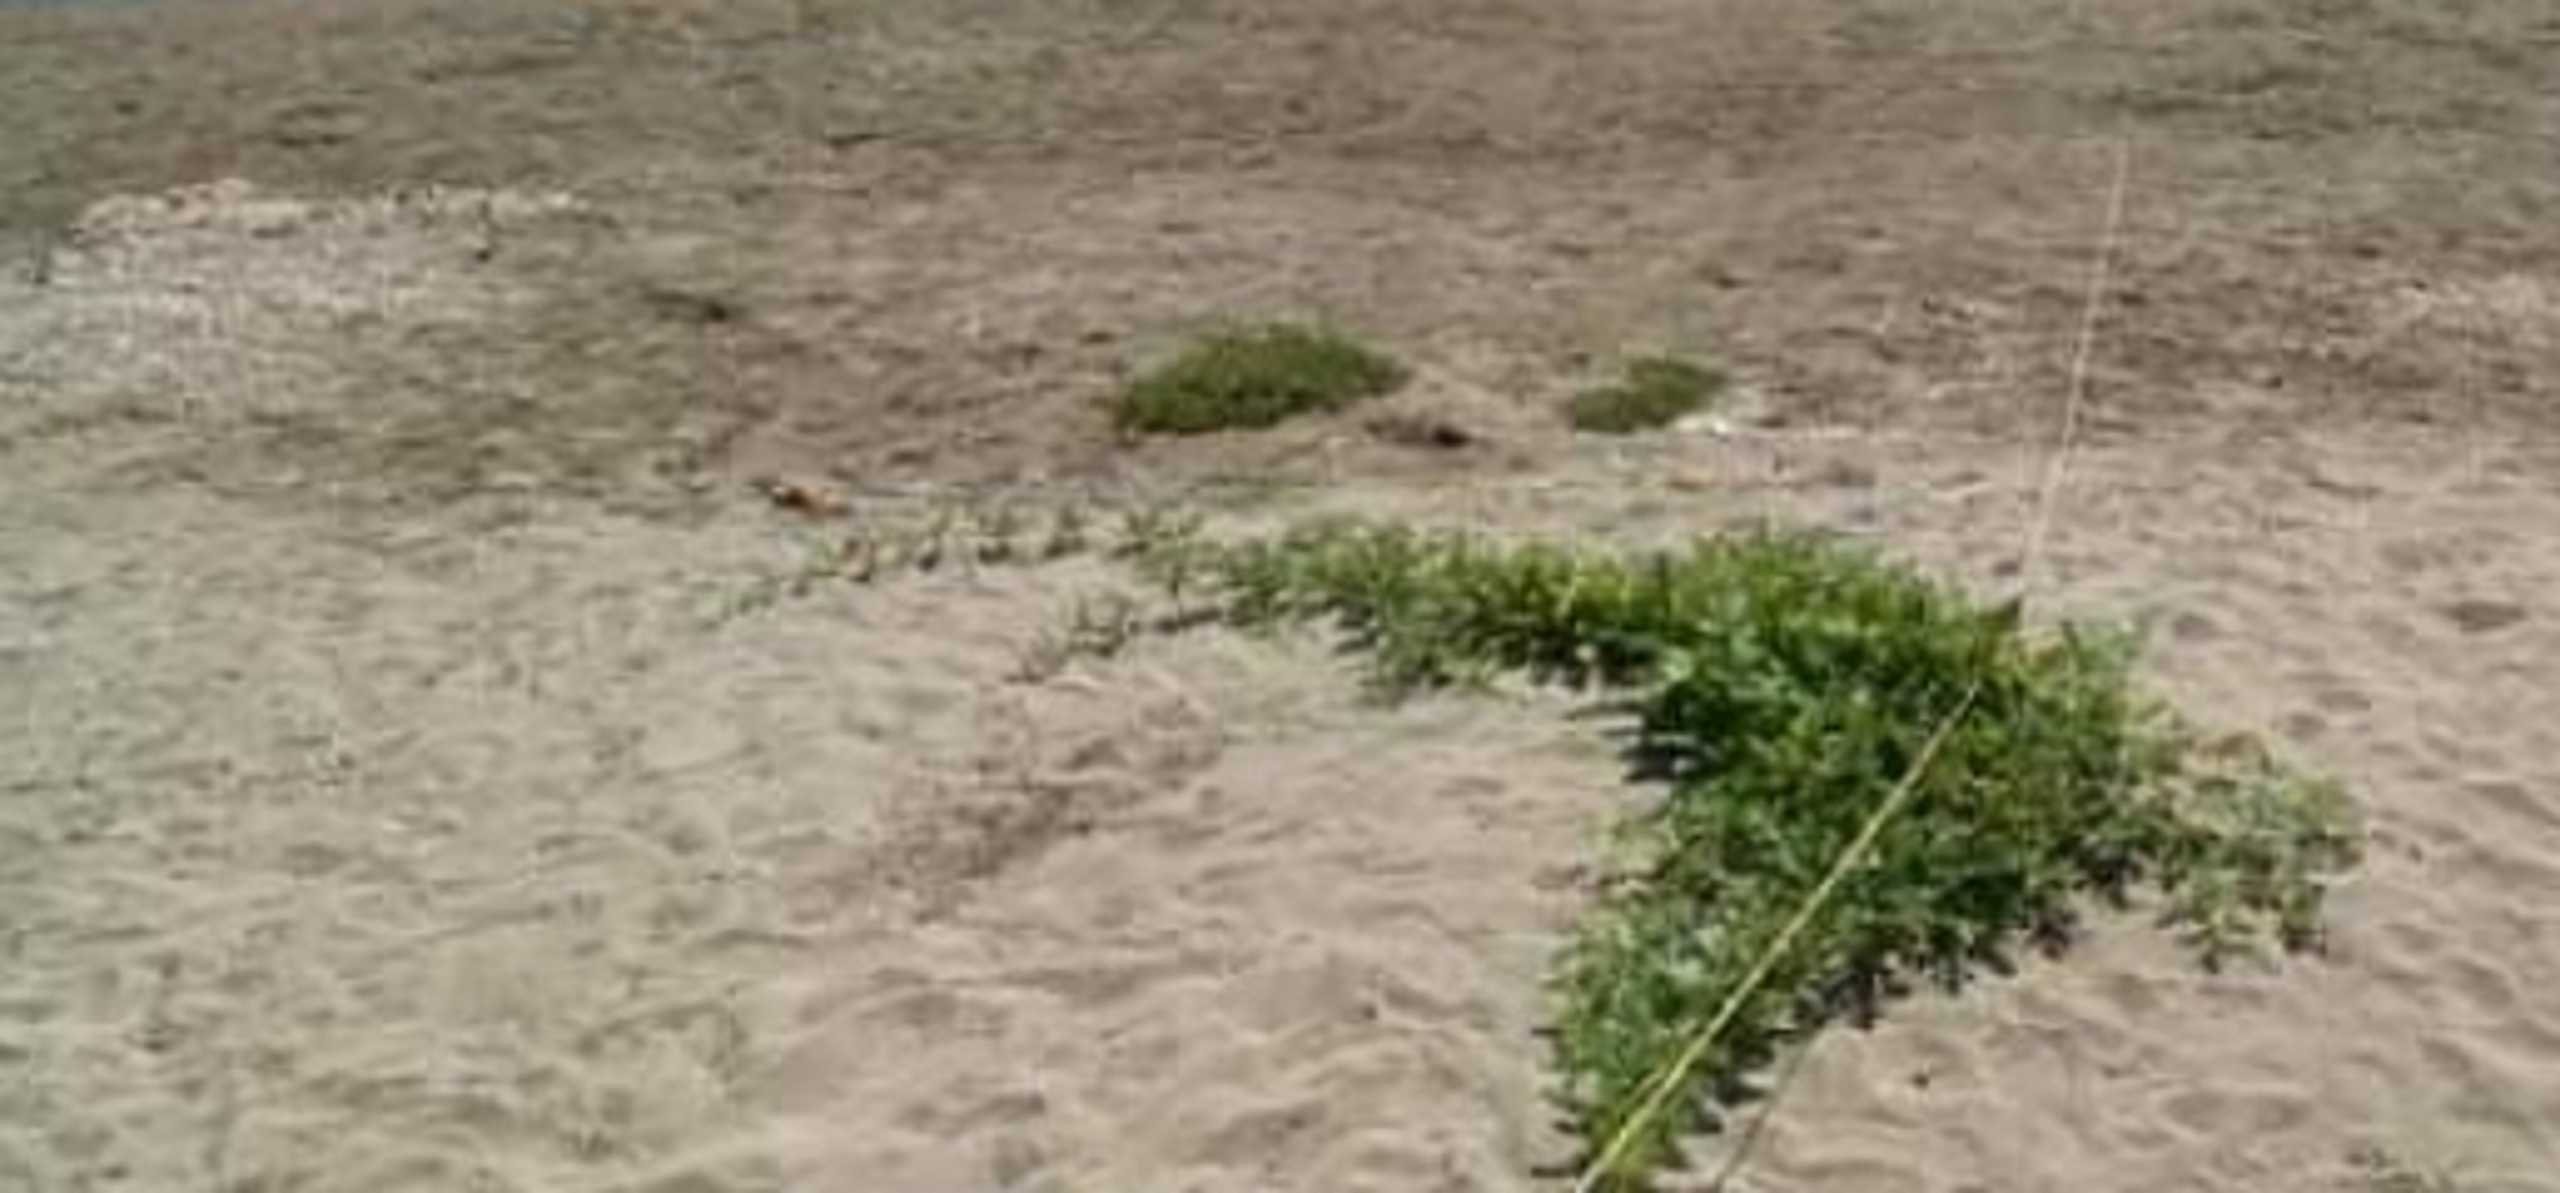 Κρήτη: Φύτρωσε καρπουζιά στην άμμο ελάχιστα μέτρα από τη θάλασσα